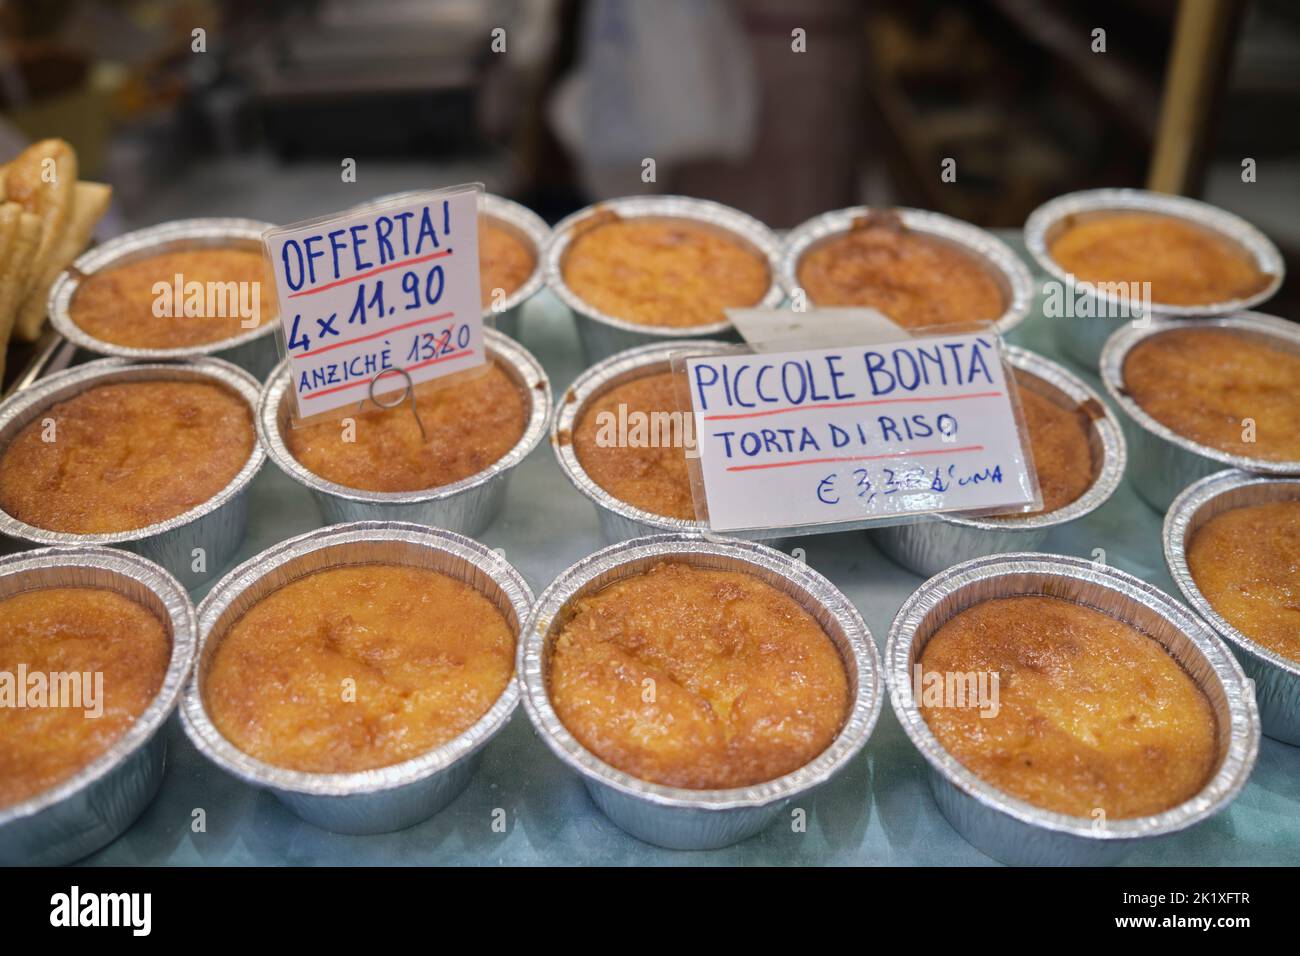 Local Rice Cake or Torta de Riso in Shop Window Display in the Quadrliatero Bologna Italy Stock Photo